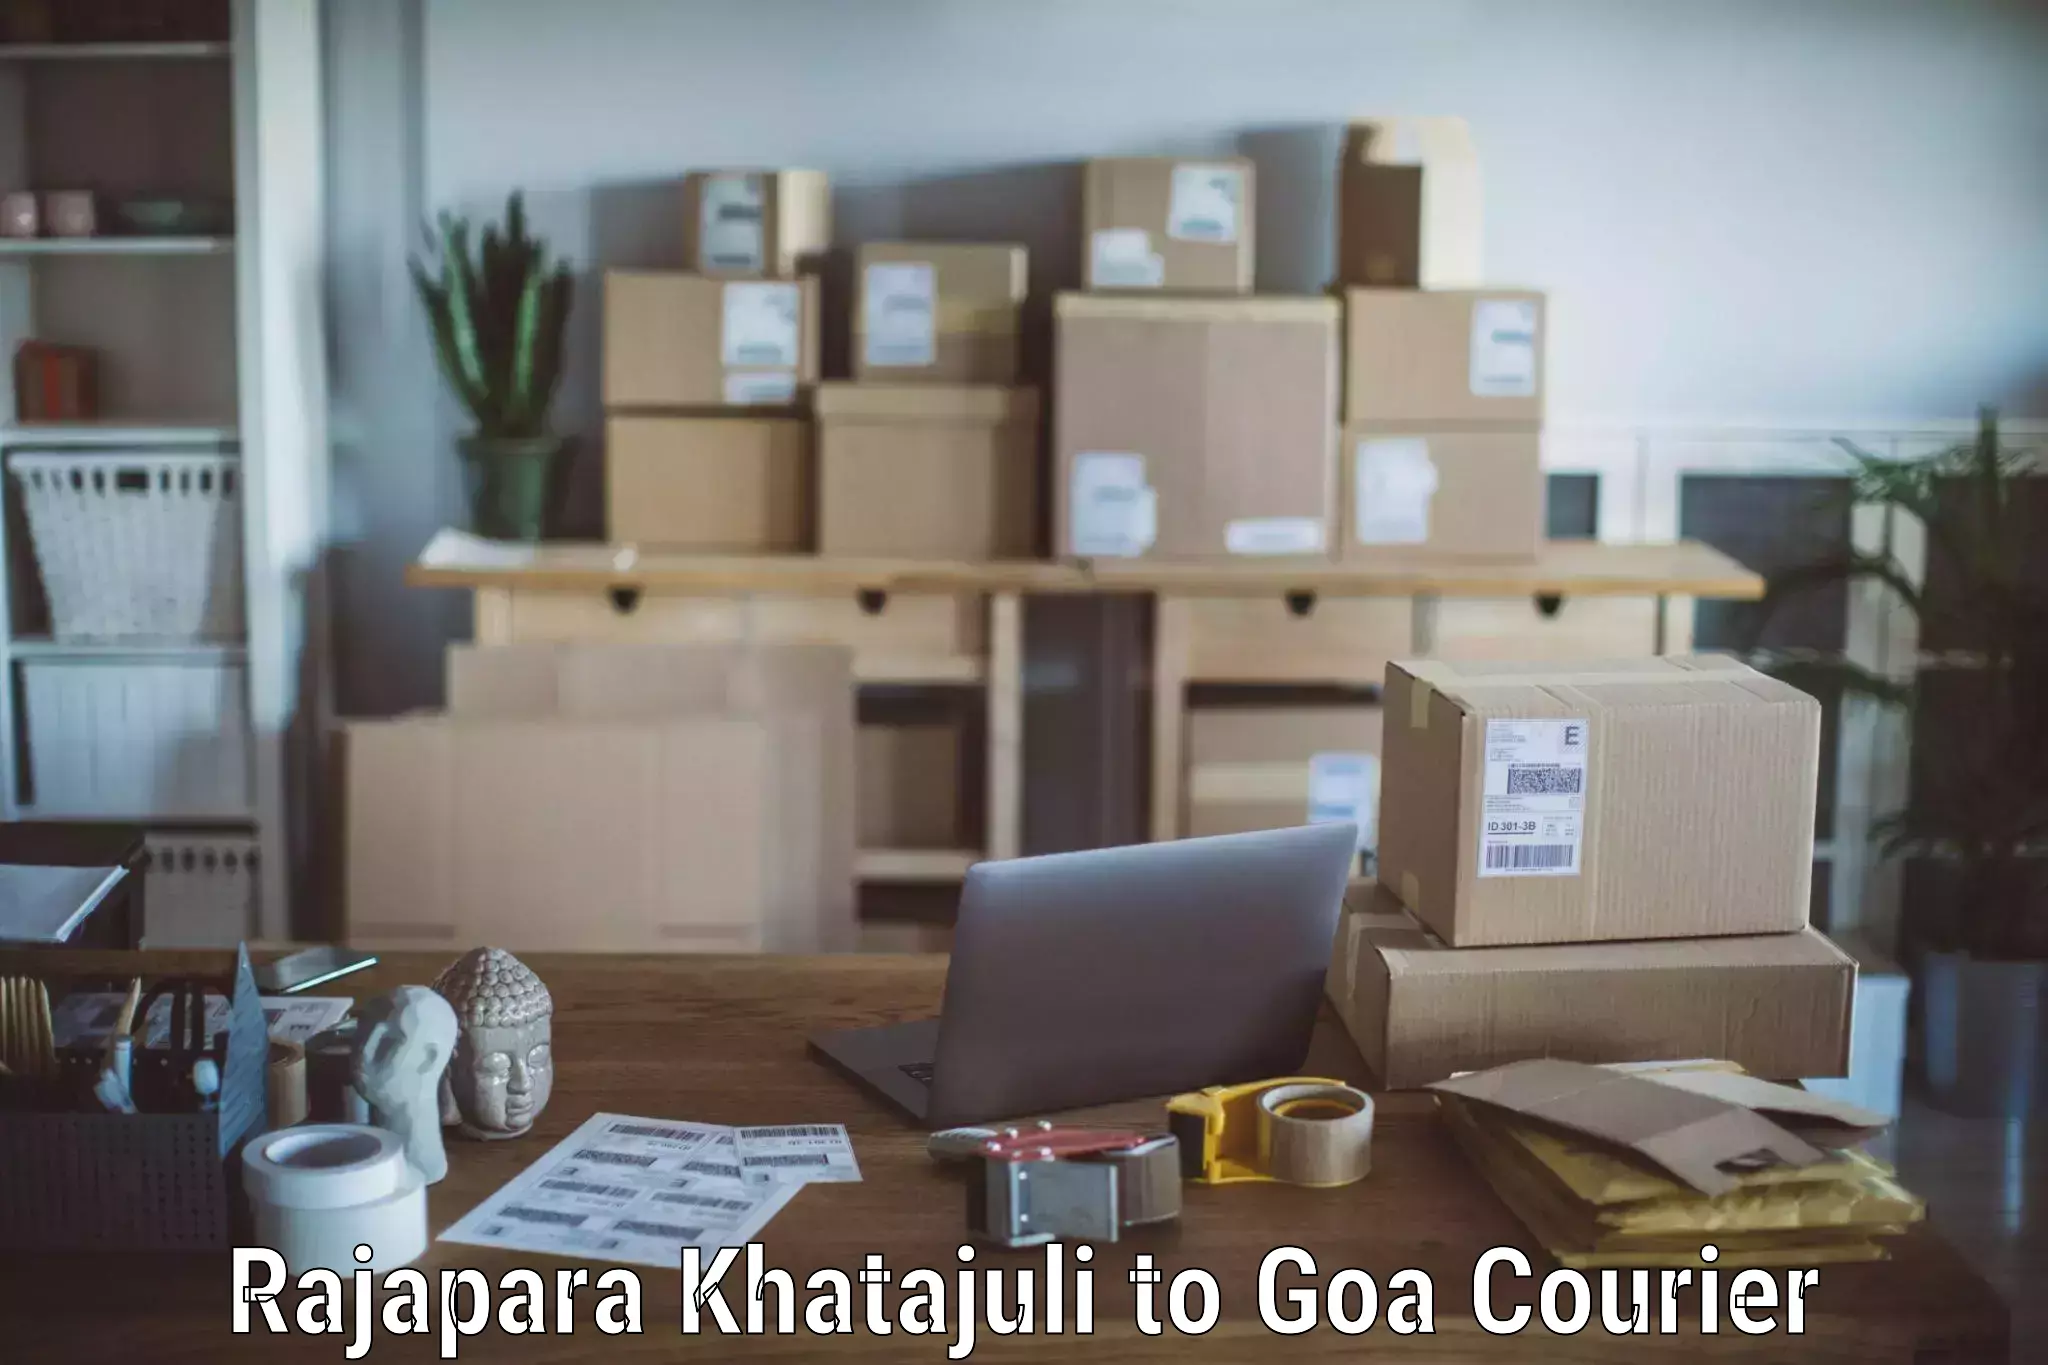 Professional packing services Rajapara Khatajuli to Panjim